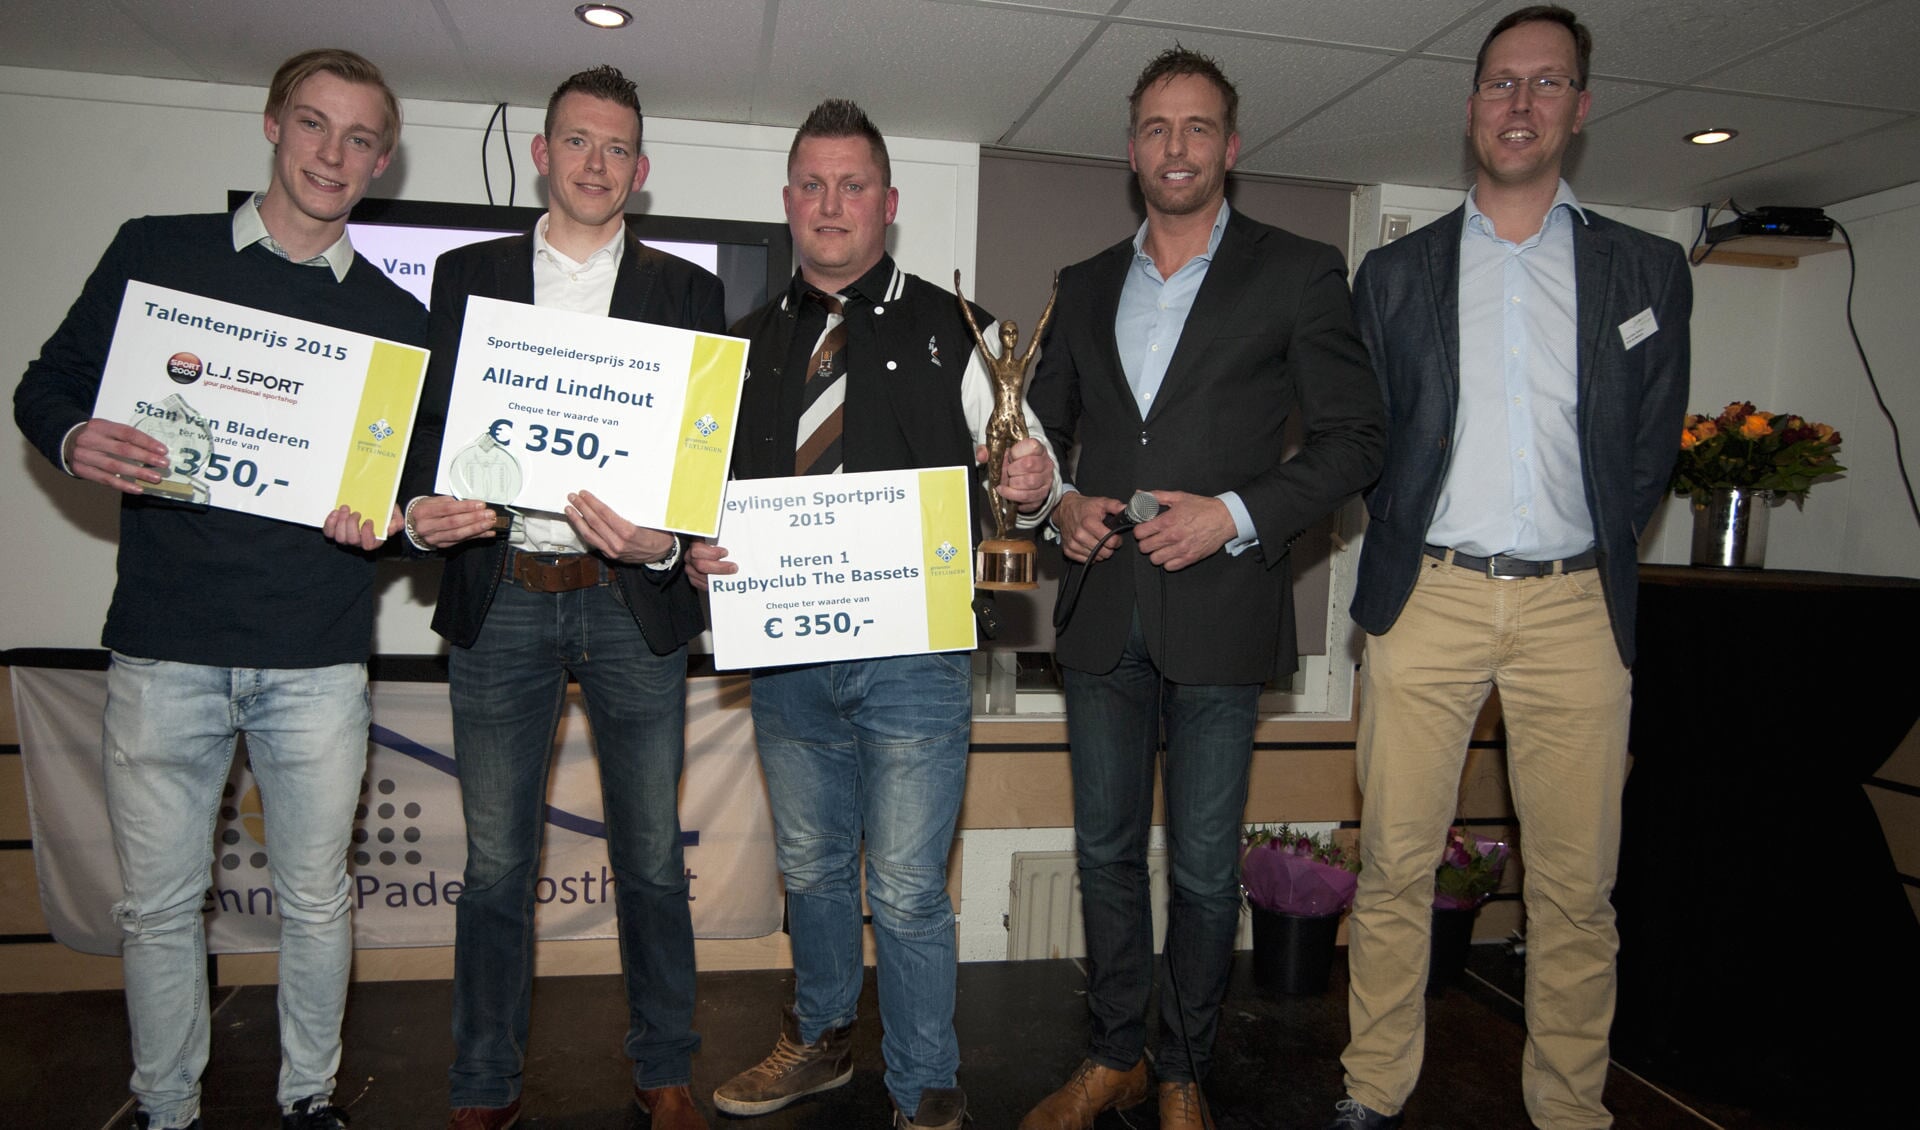 De sportprijzen werden vorig jaar gewonnen door Ajax-keeper Stan van Bladeren (Talentprijs), scheidsrechter Allard Lindhout (Sportbegeleidersprijs) en Heren 1 van rugbyclub The Bassets (Sportploeg). | Foto: archief/Willem Krol